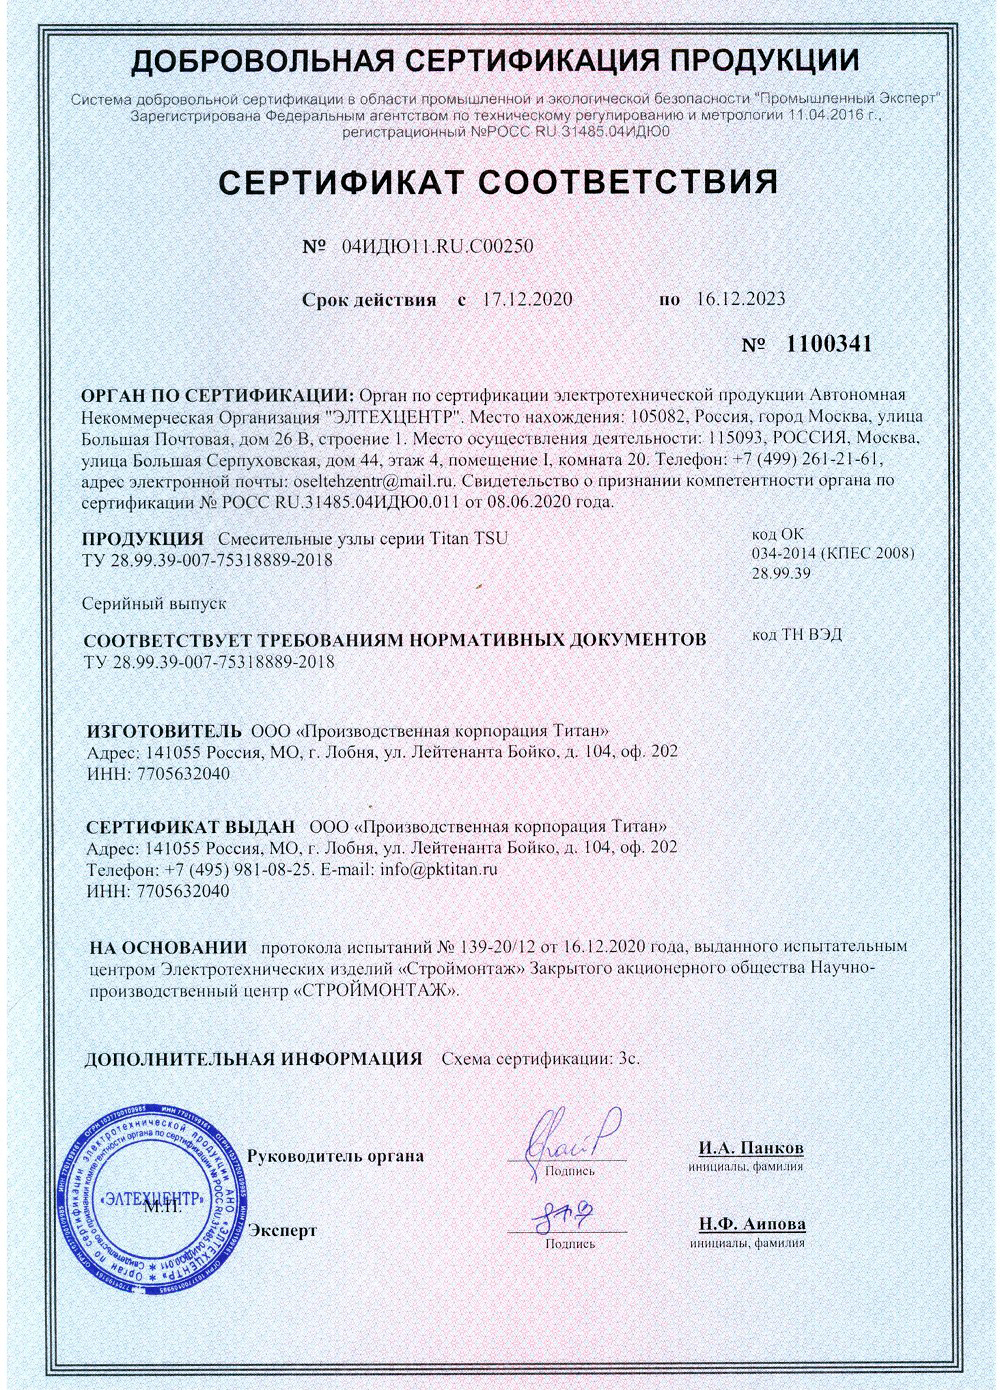 Сертификат соответствия на смесительные узлы